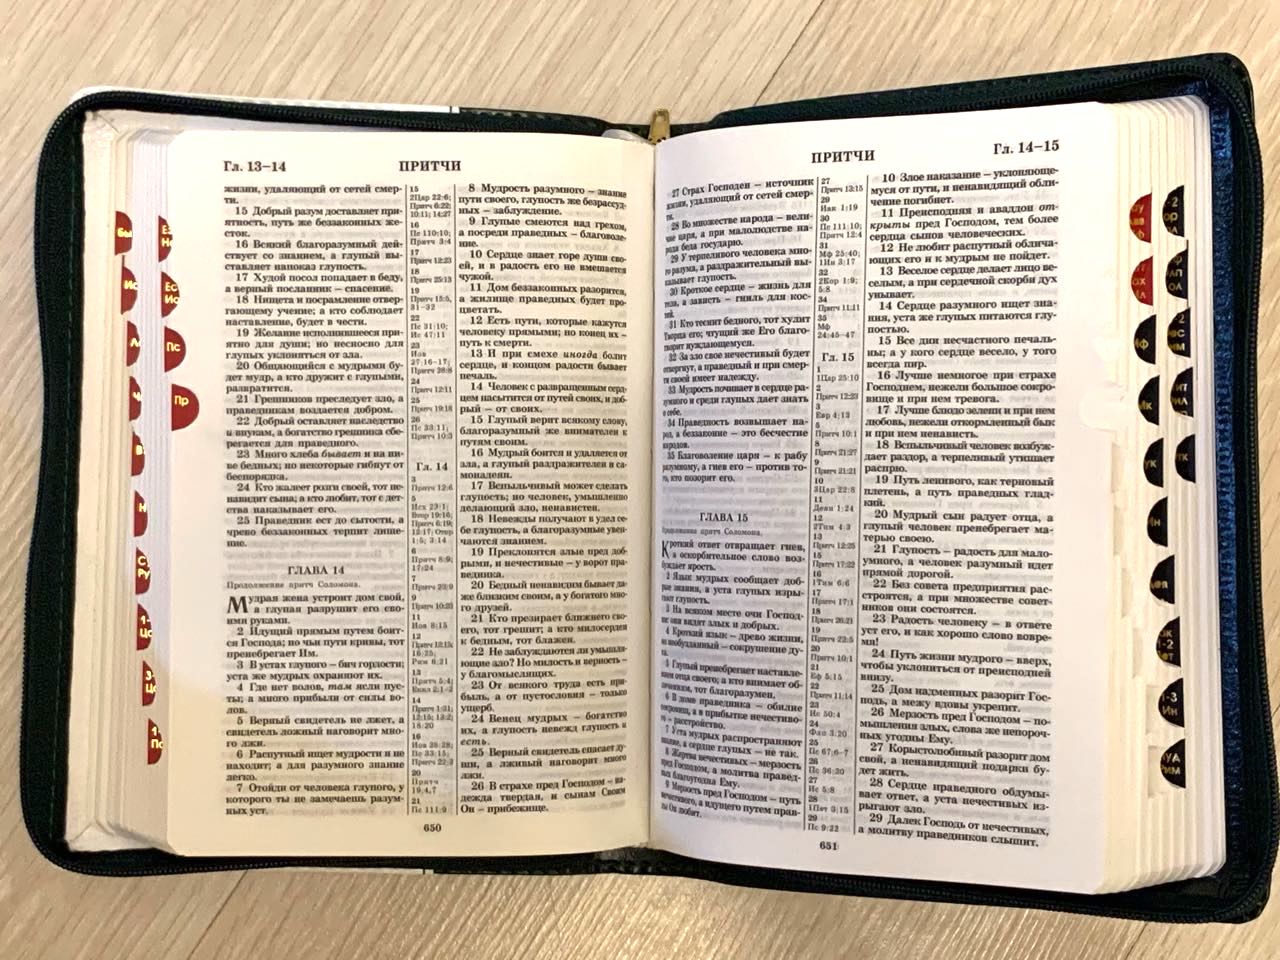 БИБЛИЯ 046DTzti формат, переплет из натуральной кожи на молнии с индексами, термо орнамент и надпись золотом "Библия", цвет темно-зеленый/белый, средний формат, 132*182 мм, цветные карты, шрифт 12 кегель